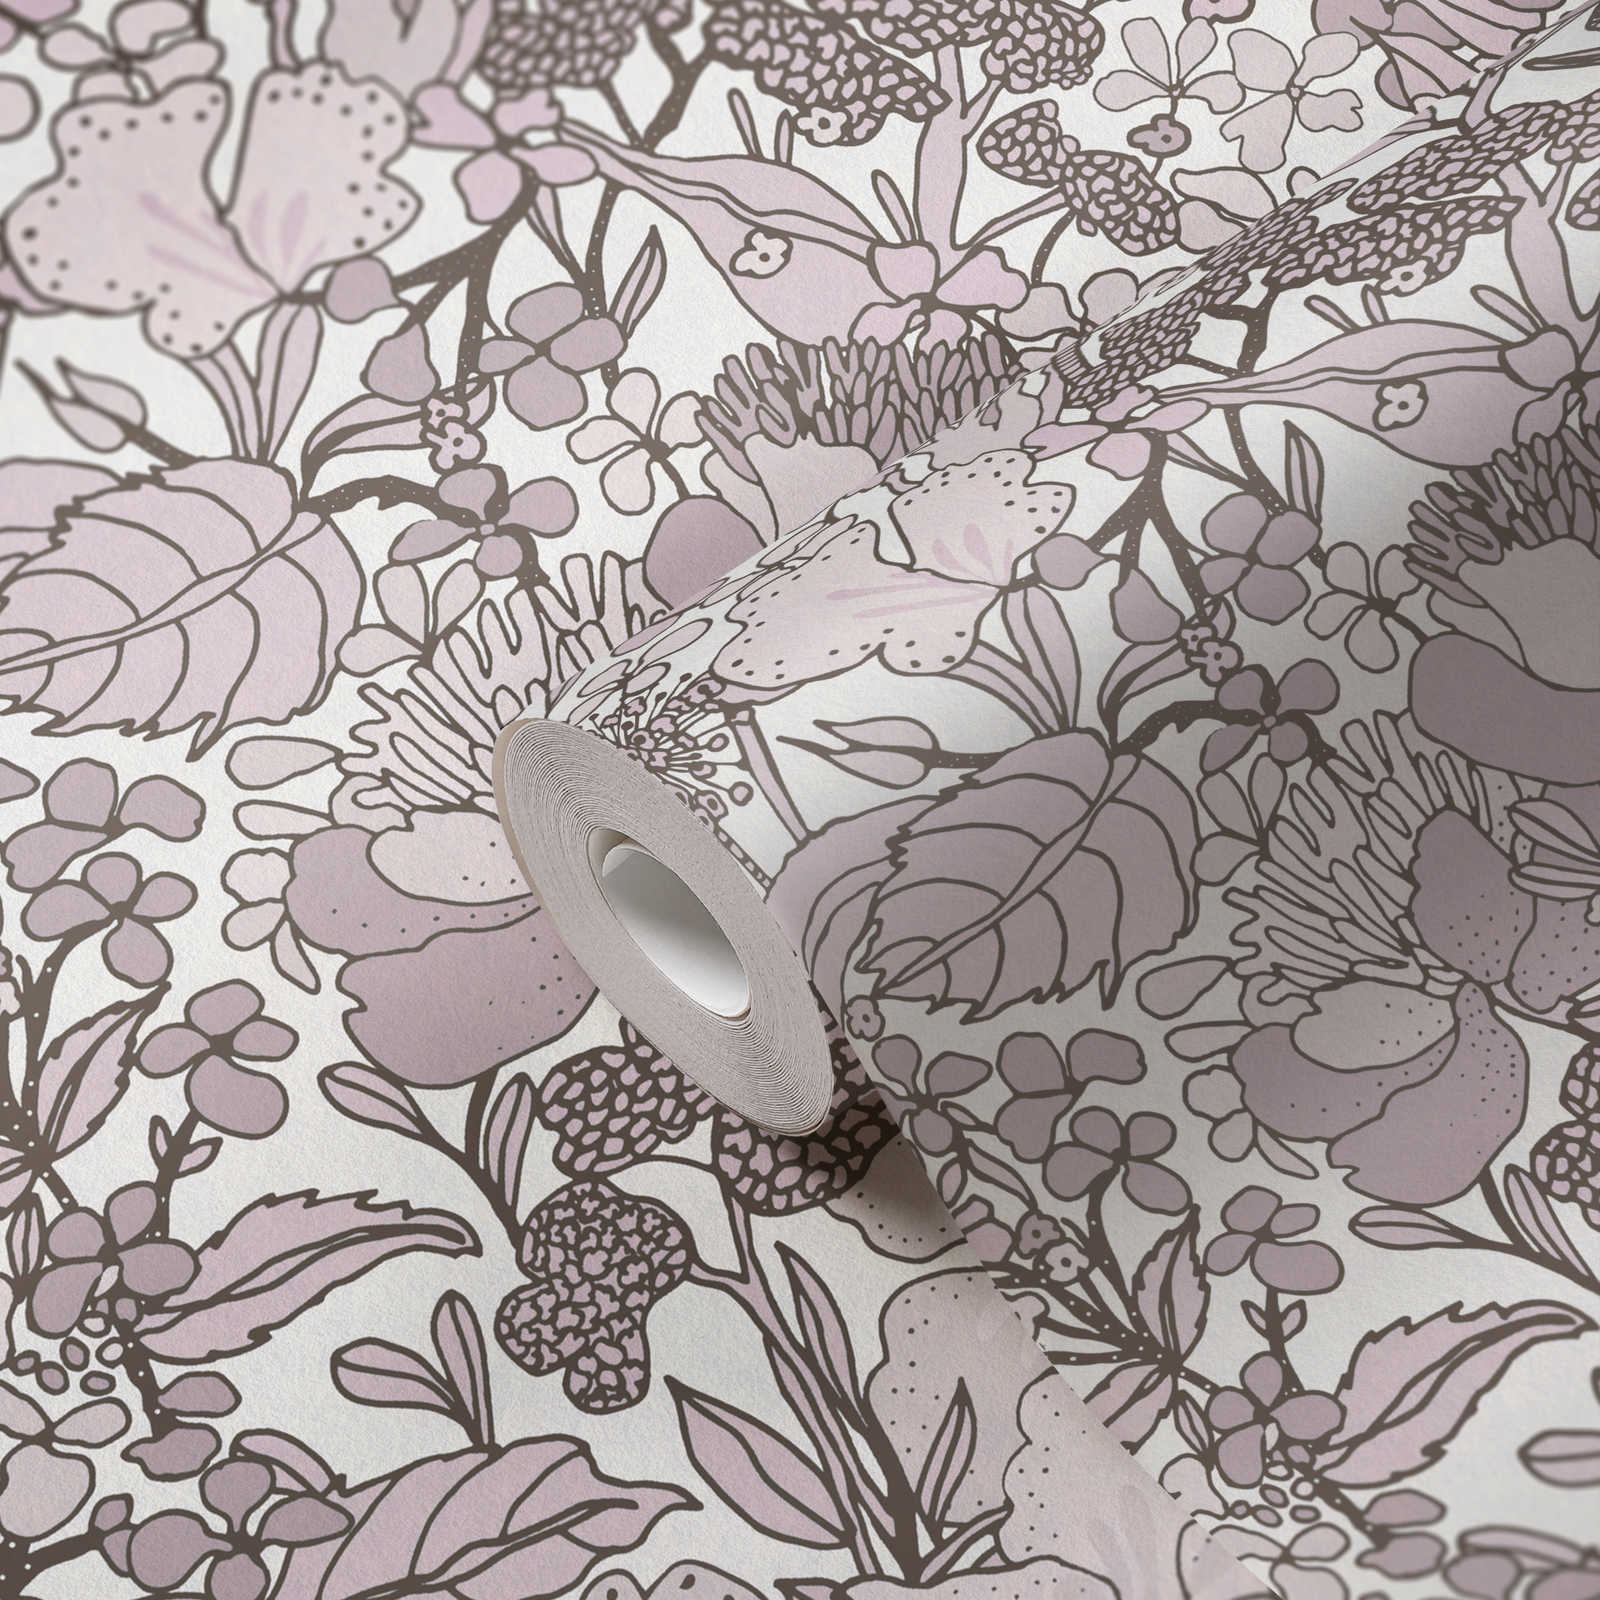             Tapete Grau Beige Blumenmuster im Zeichenstil – Creme, Braun, Weiß
        